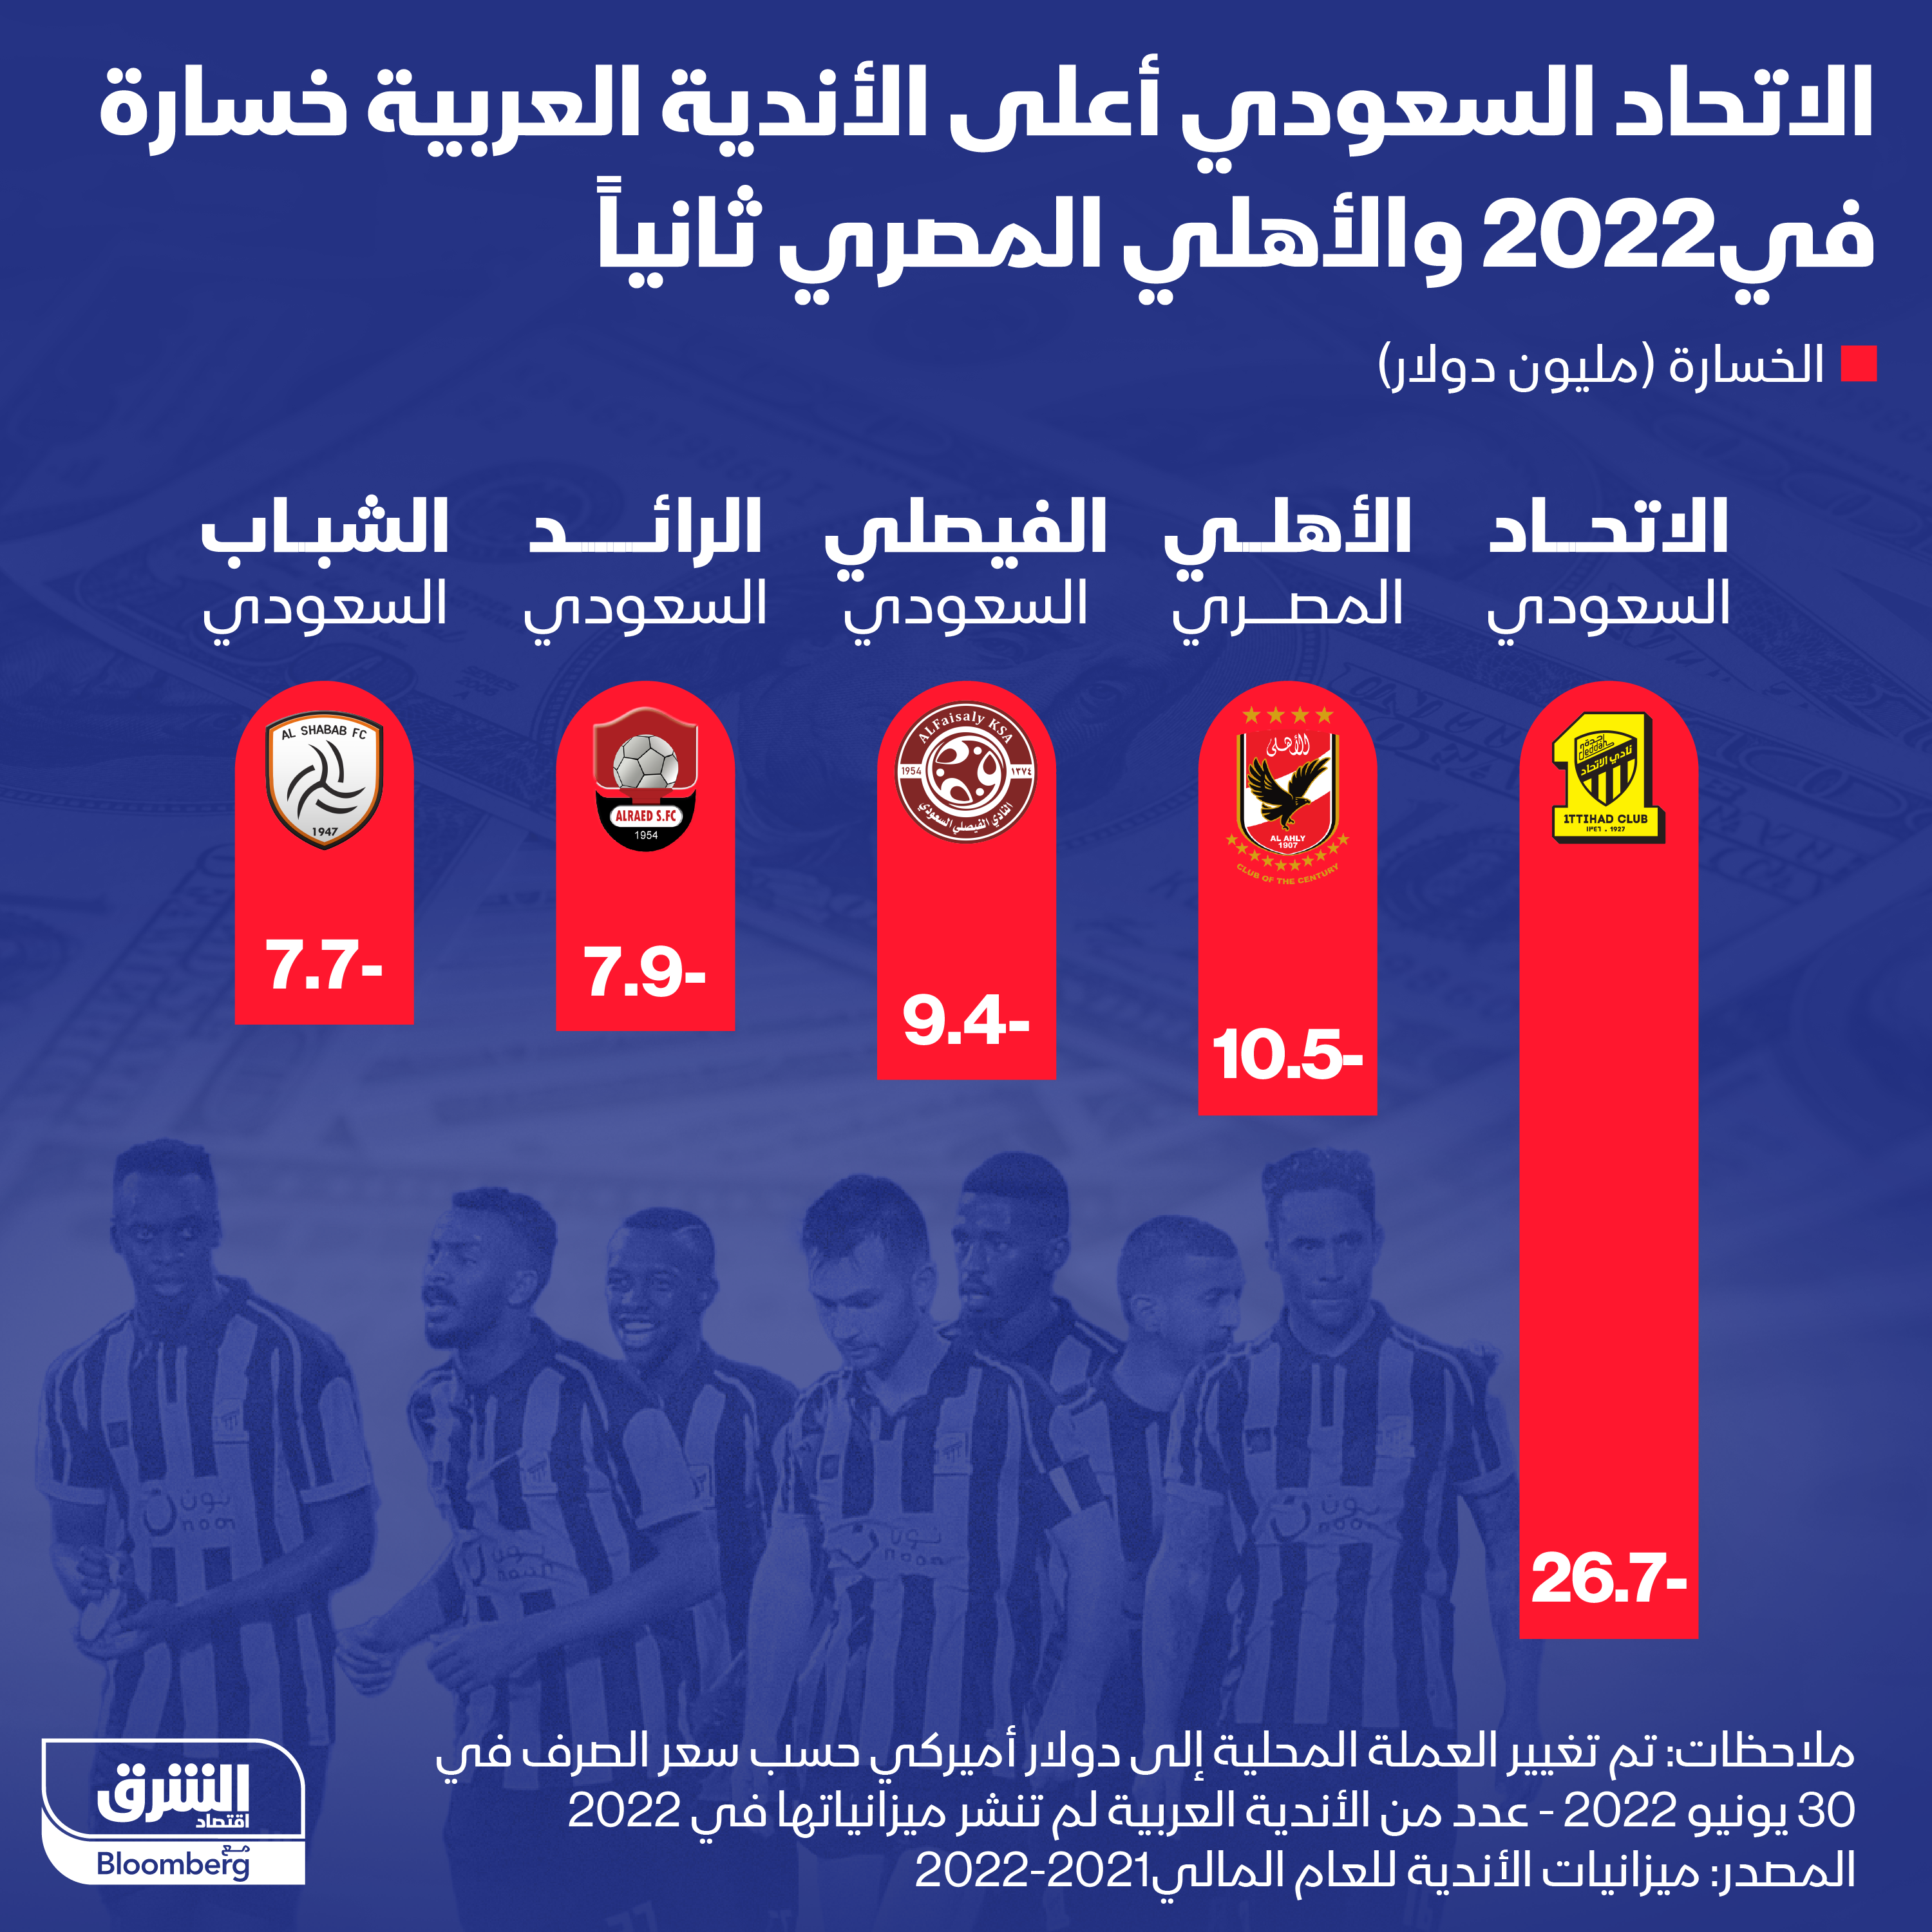 النادي الأهلي في المرتبة الثانية بين الأندية العربية من حيث الخسائر في 2022